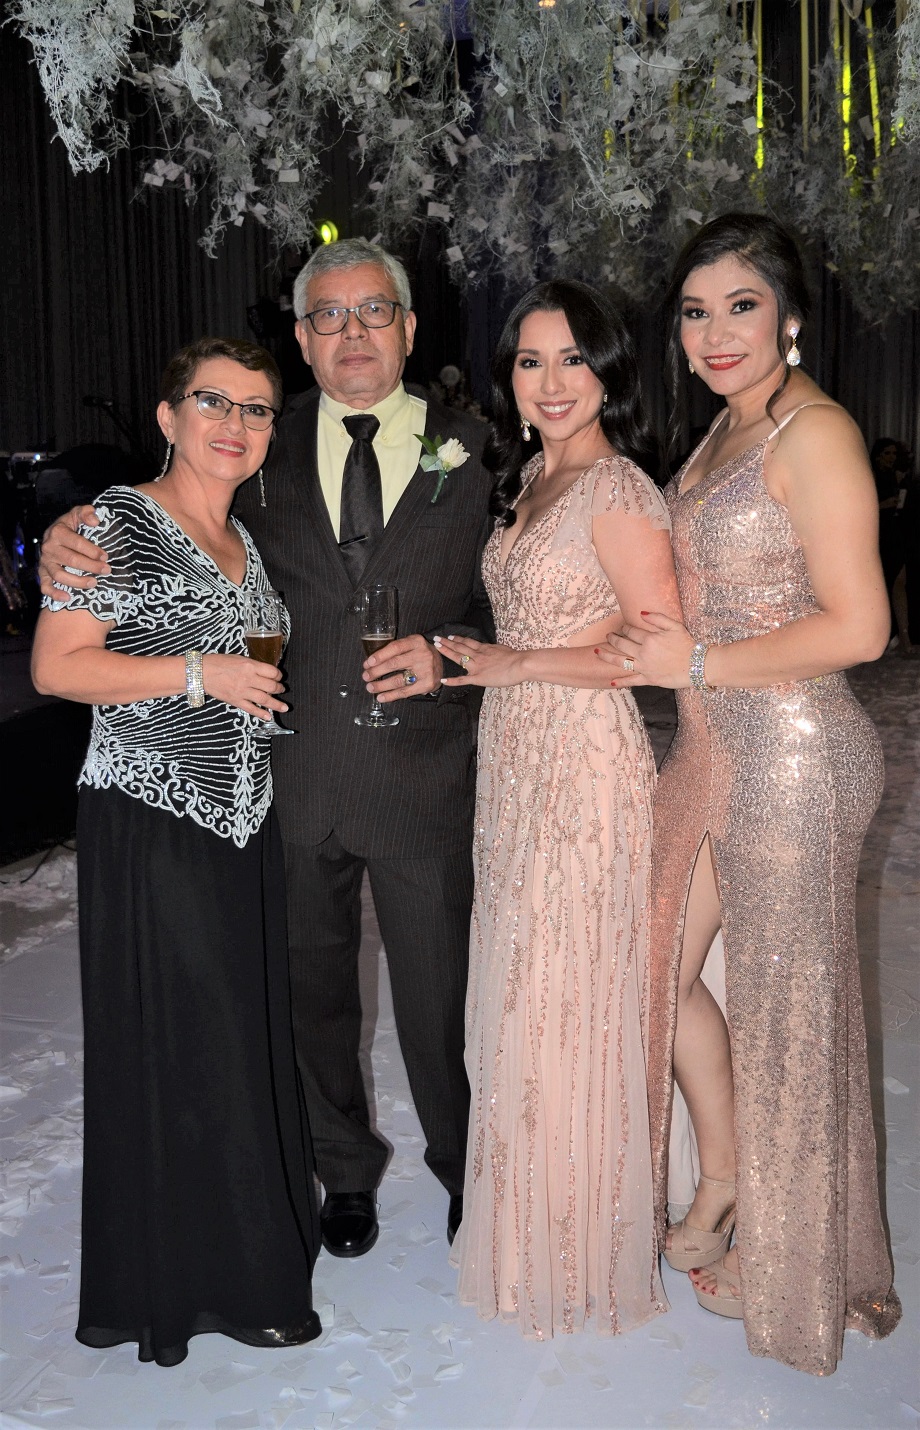 La boda de Héctor Luis Ponce y Patricia Jackeline Interiano… una bella historia de amor